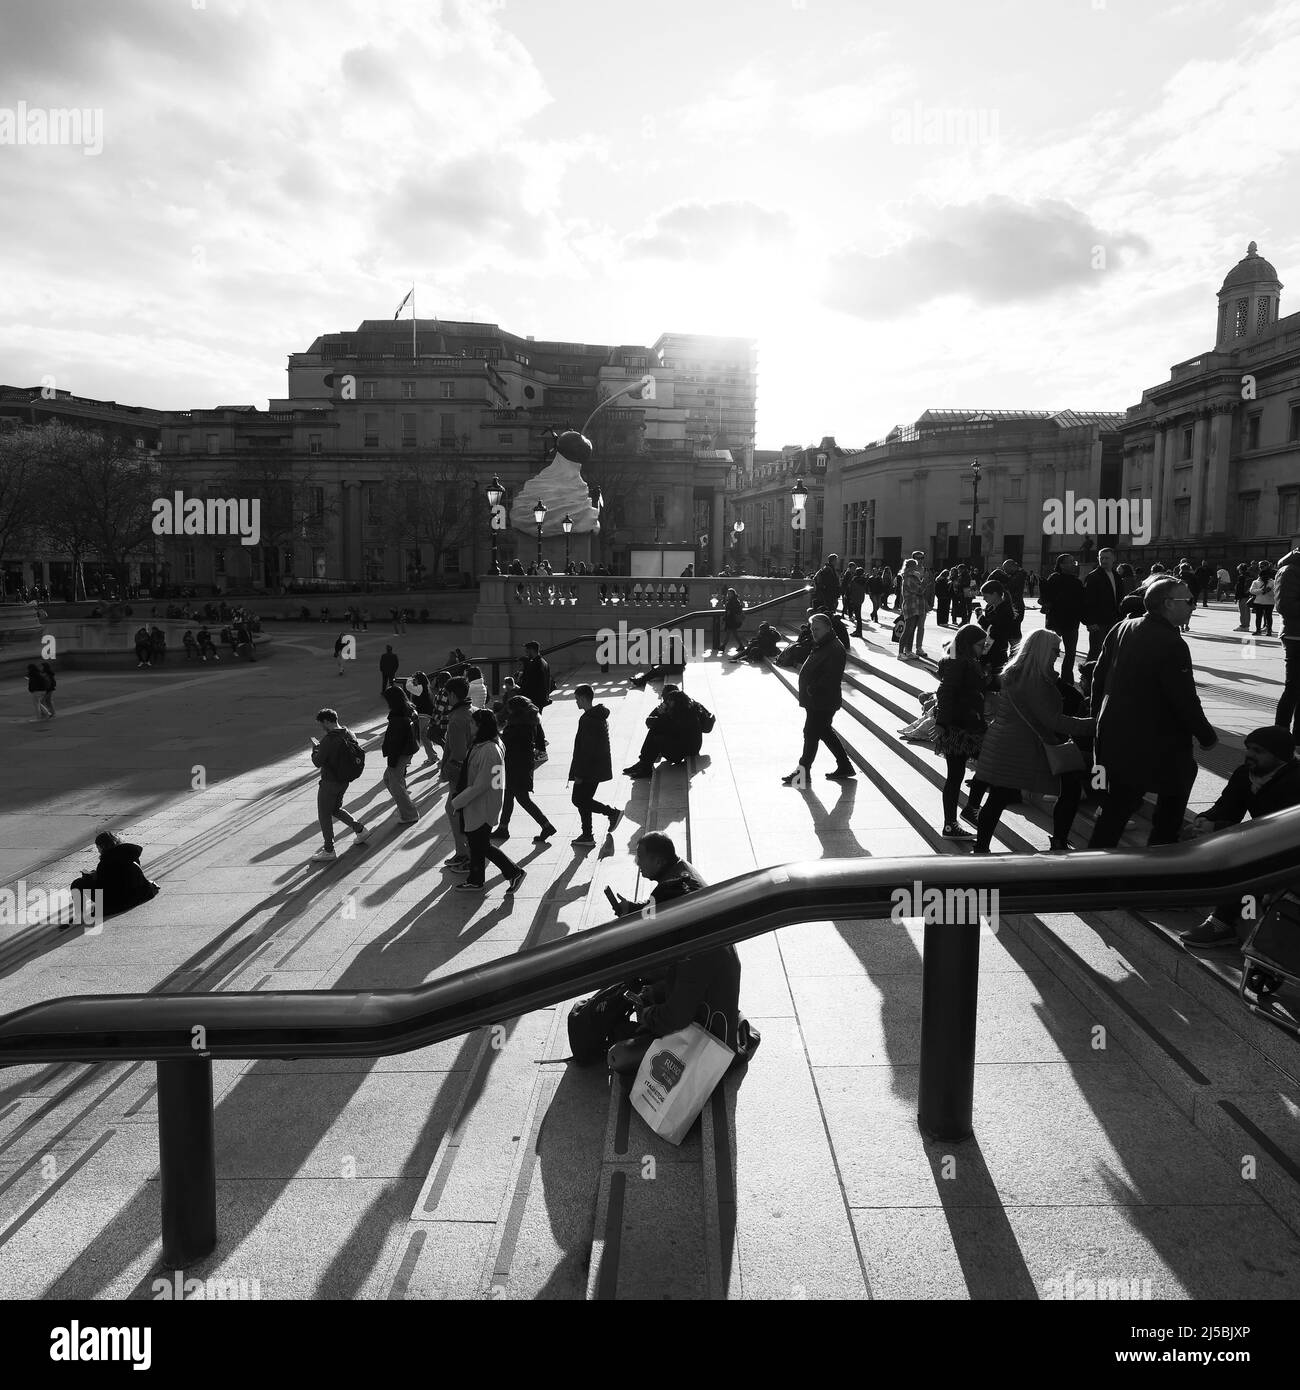 Touristes assis et marchant autour des marches de Trafalgar Square avec le quatrième Plinth derrière. Monochrome. Londres. Banque D'Images